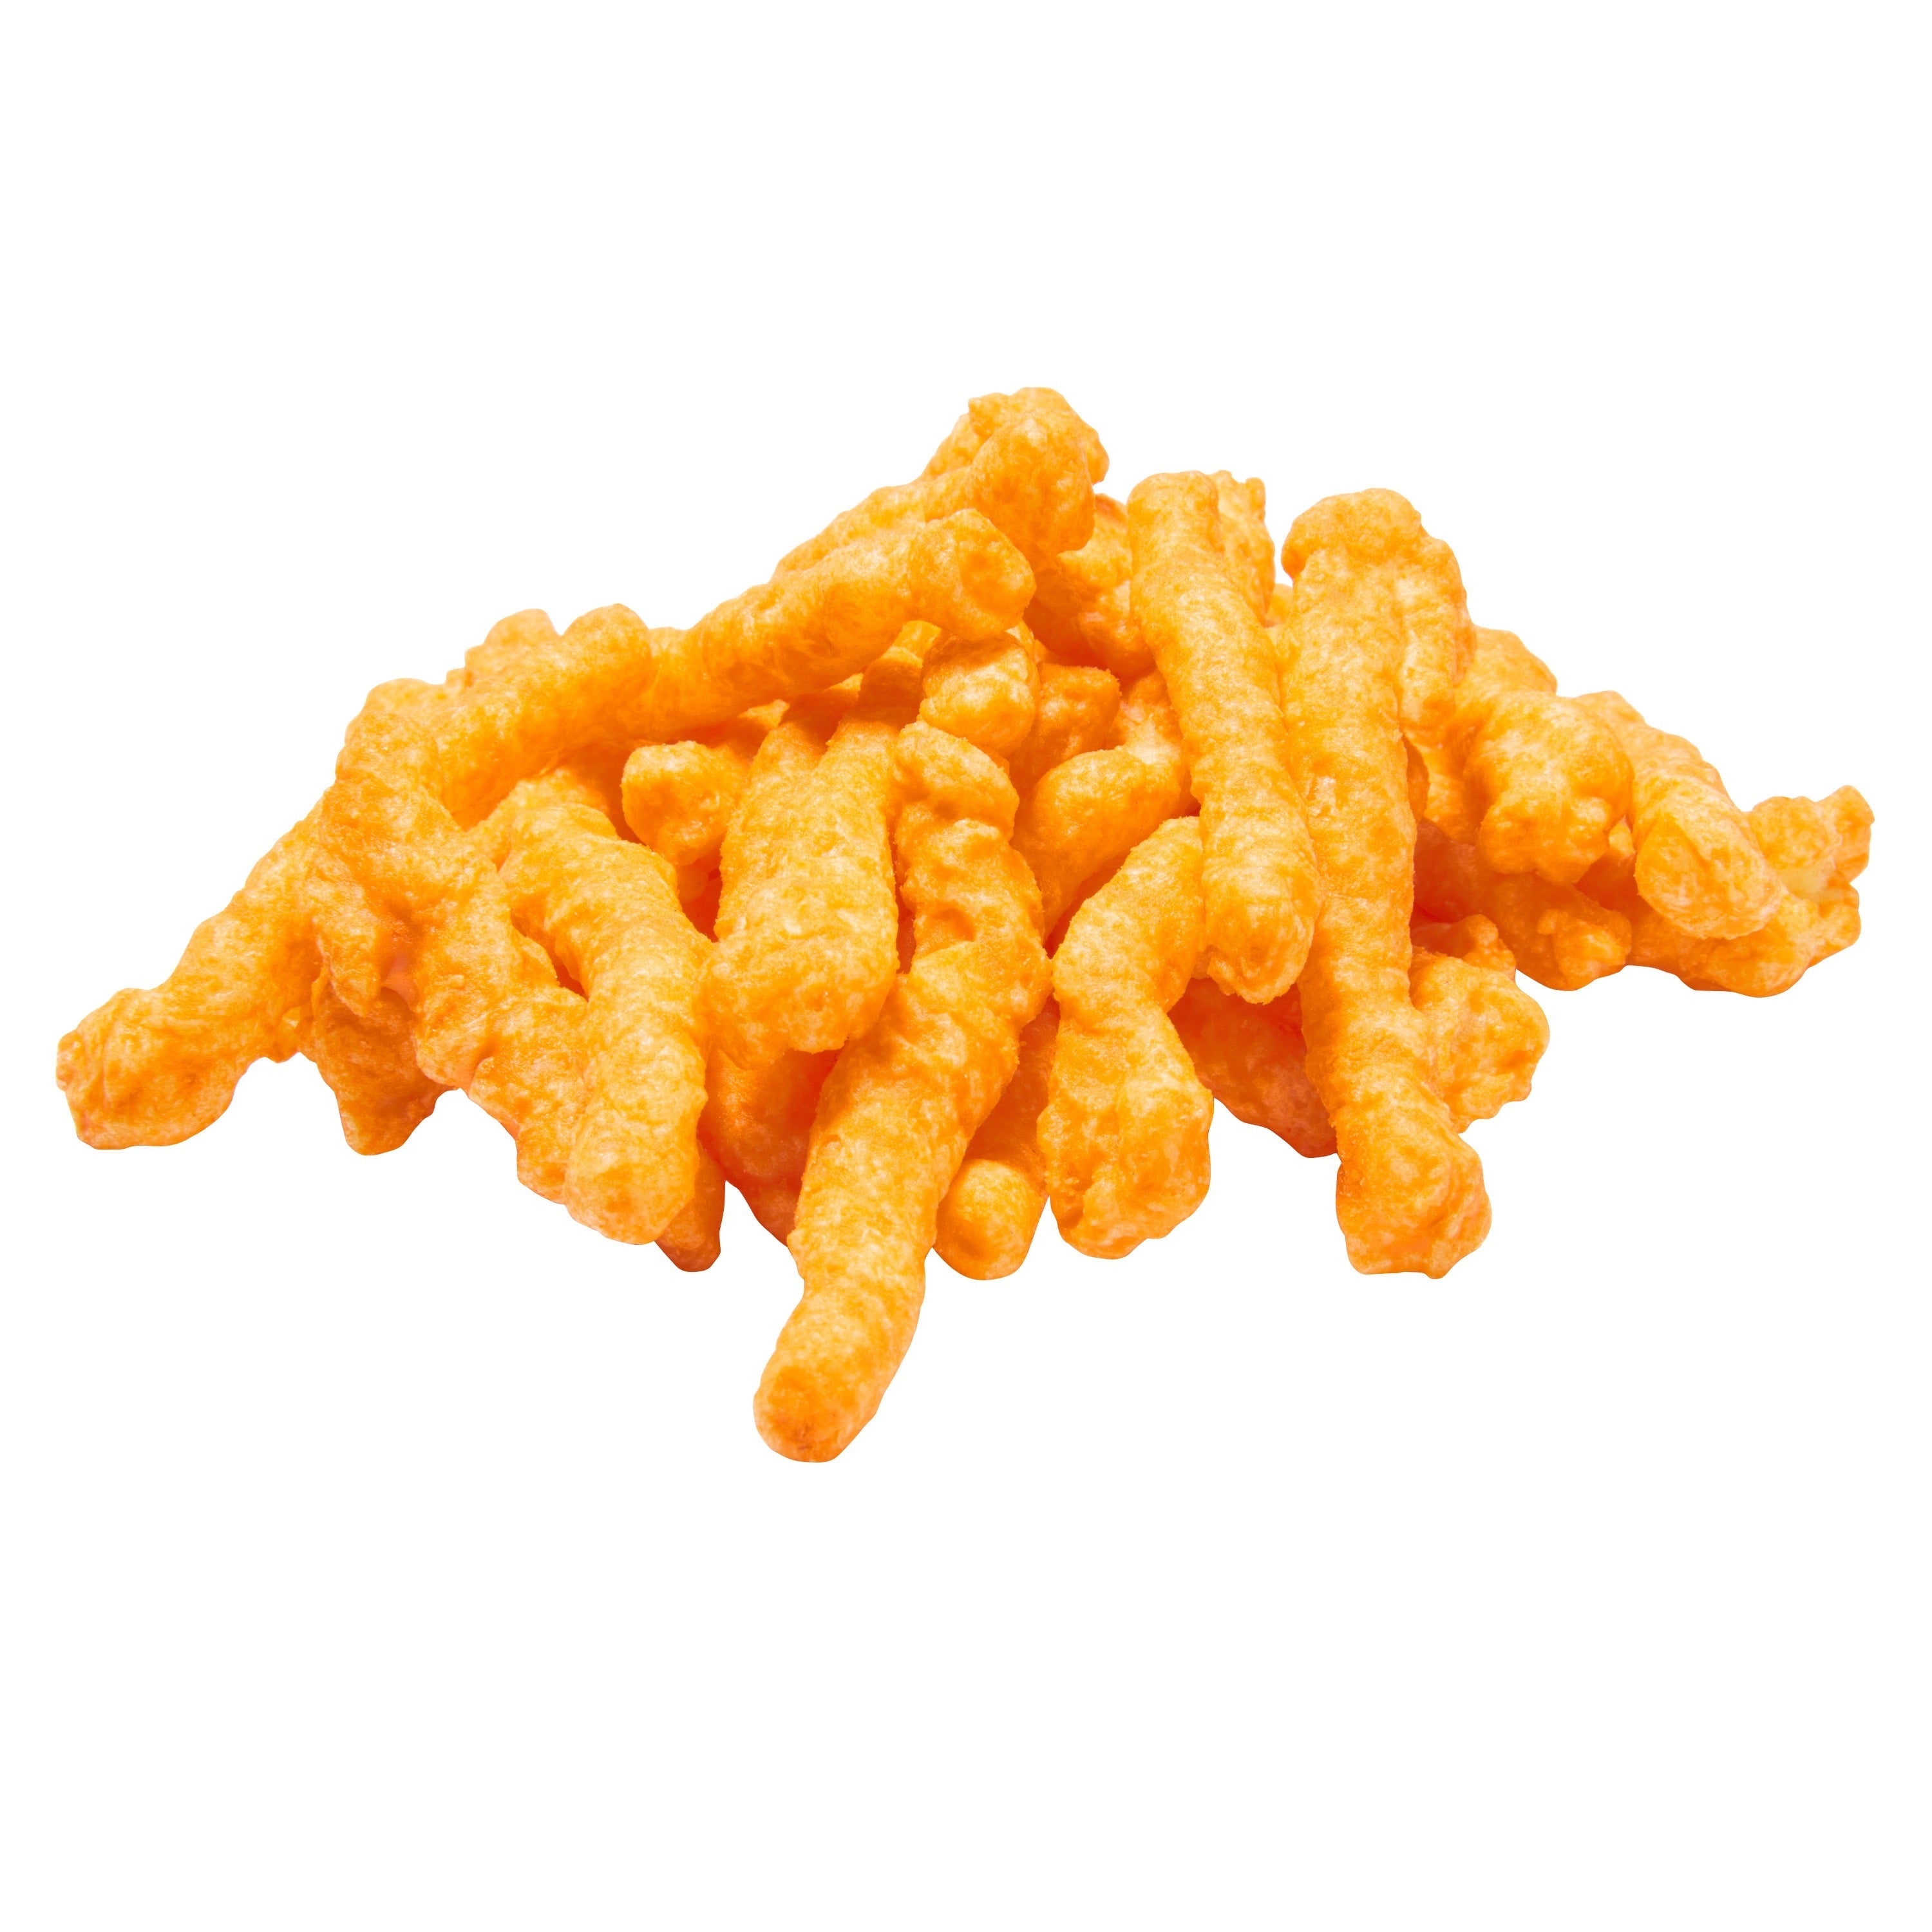 Frito Lay Cheetos Cheddar Jalapeno Crunchy (226.8 g) Frito Lay